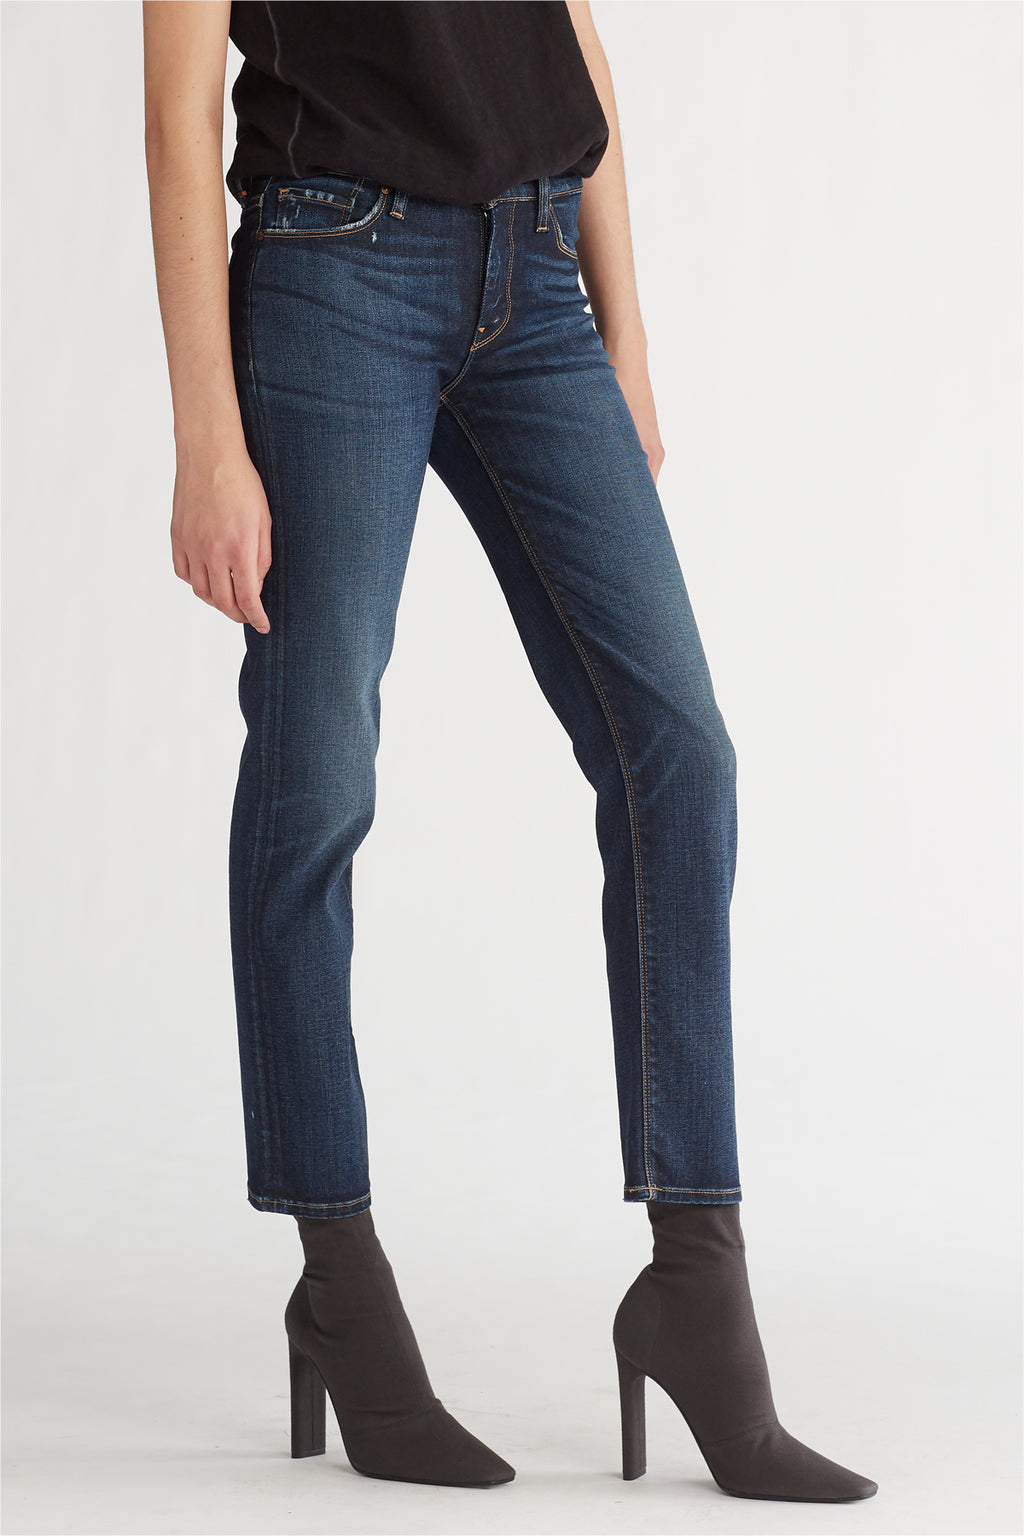 Women's Denim Straight – Hudson Jeans